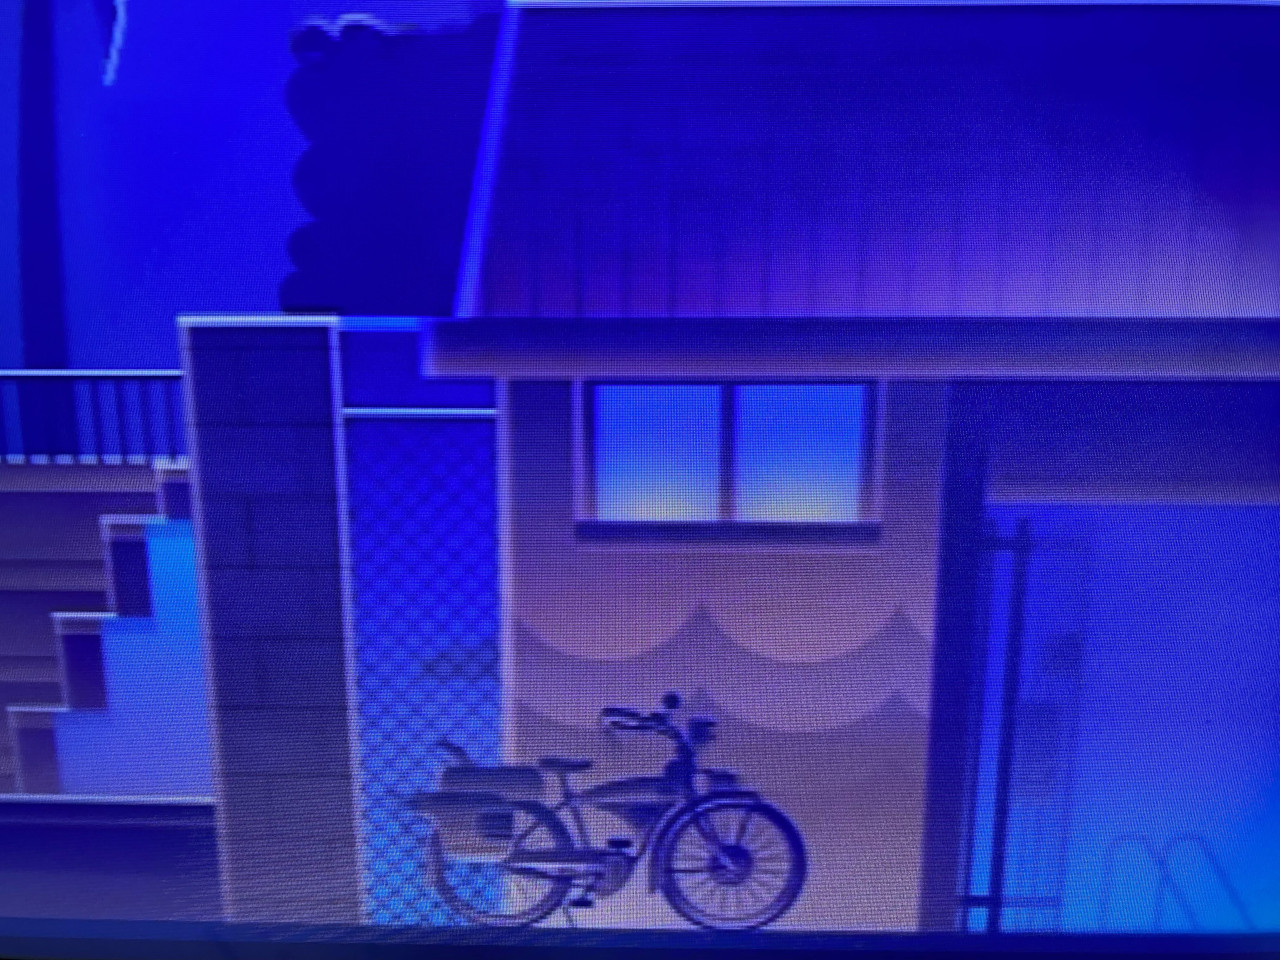 Pee-Wee Herman's bike in Roku City screensaver